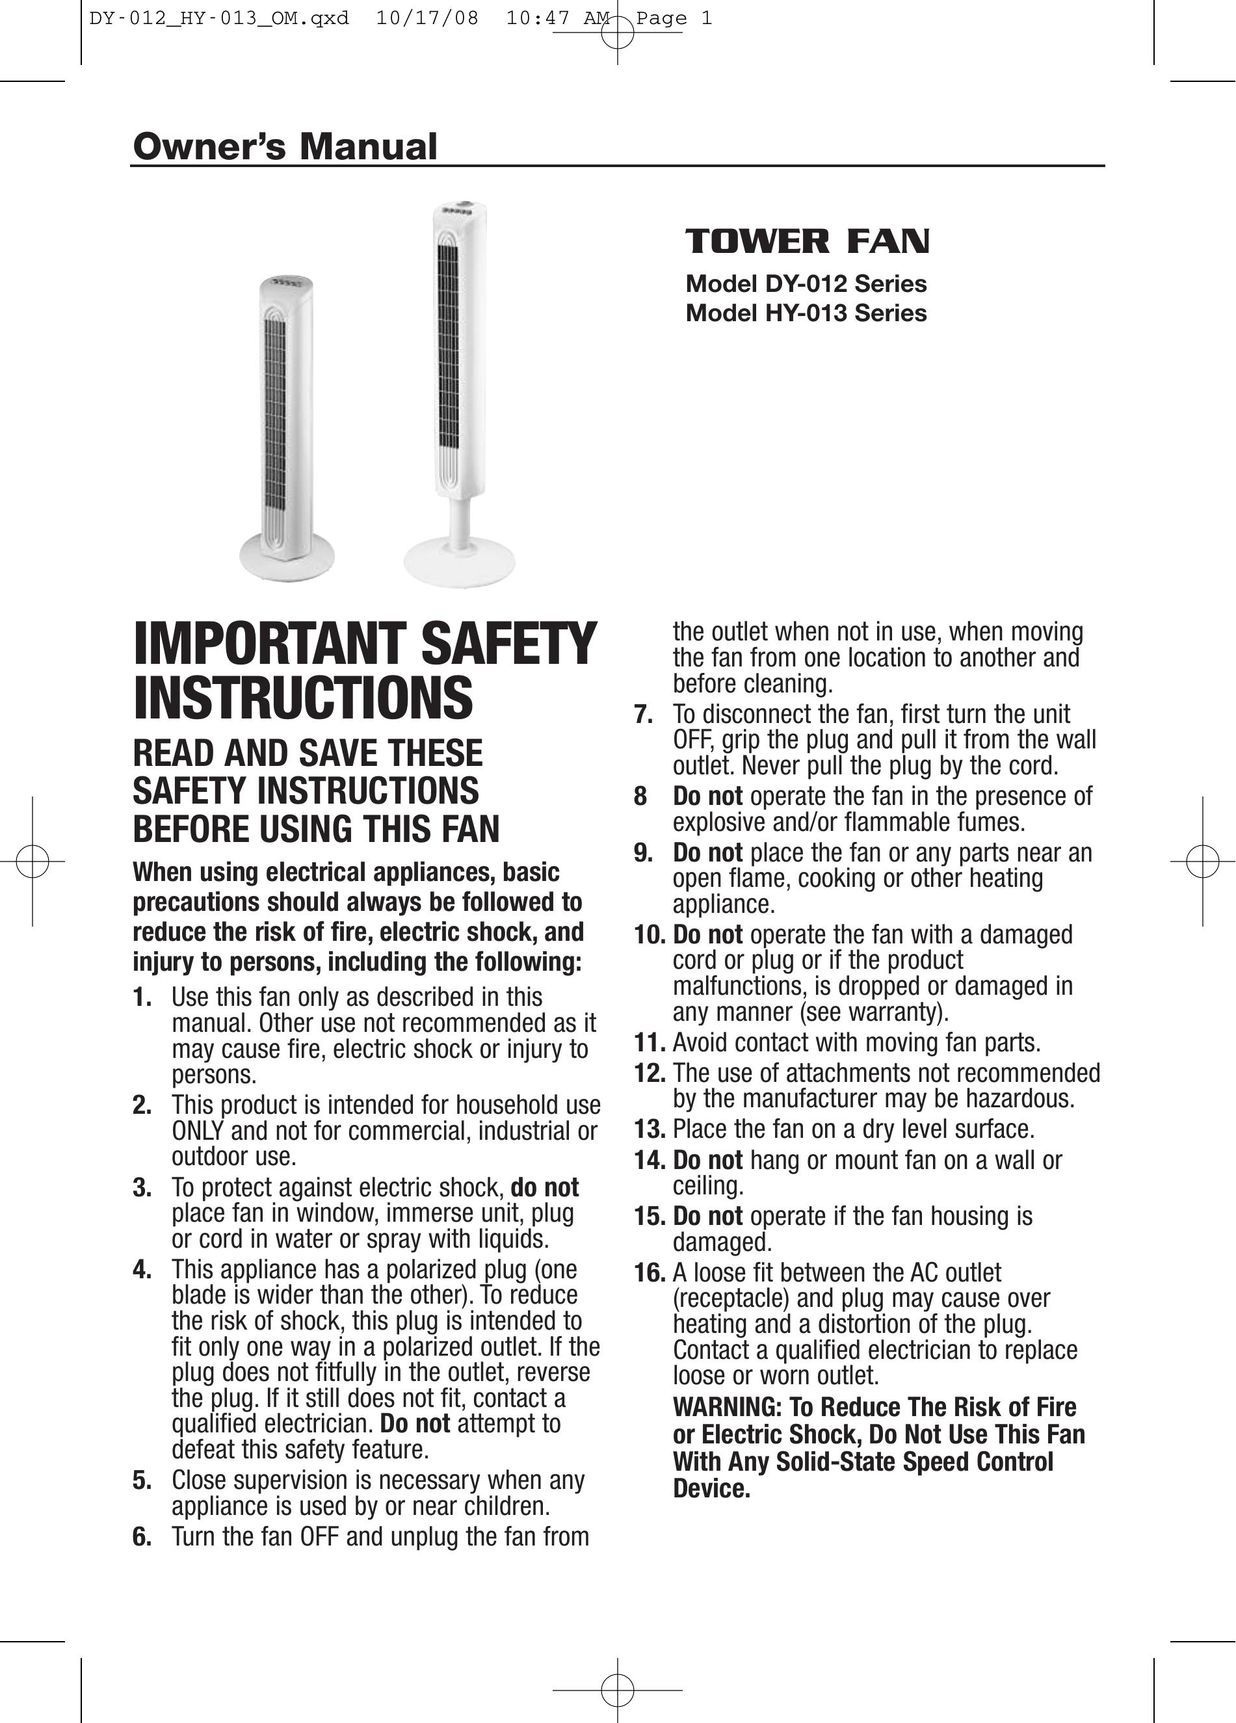 Honeywell HY013 Fan User Manual